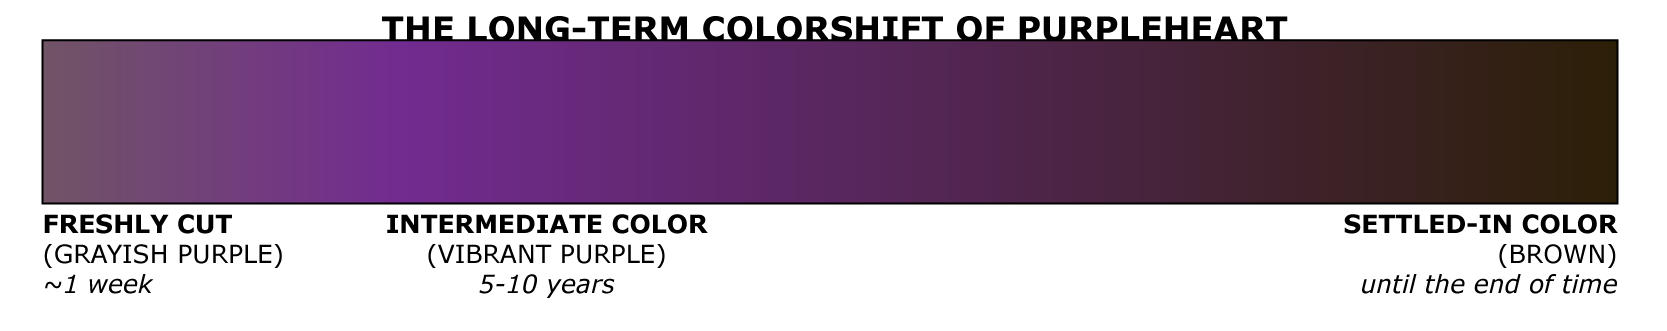 colorshift of purpleheart